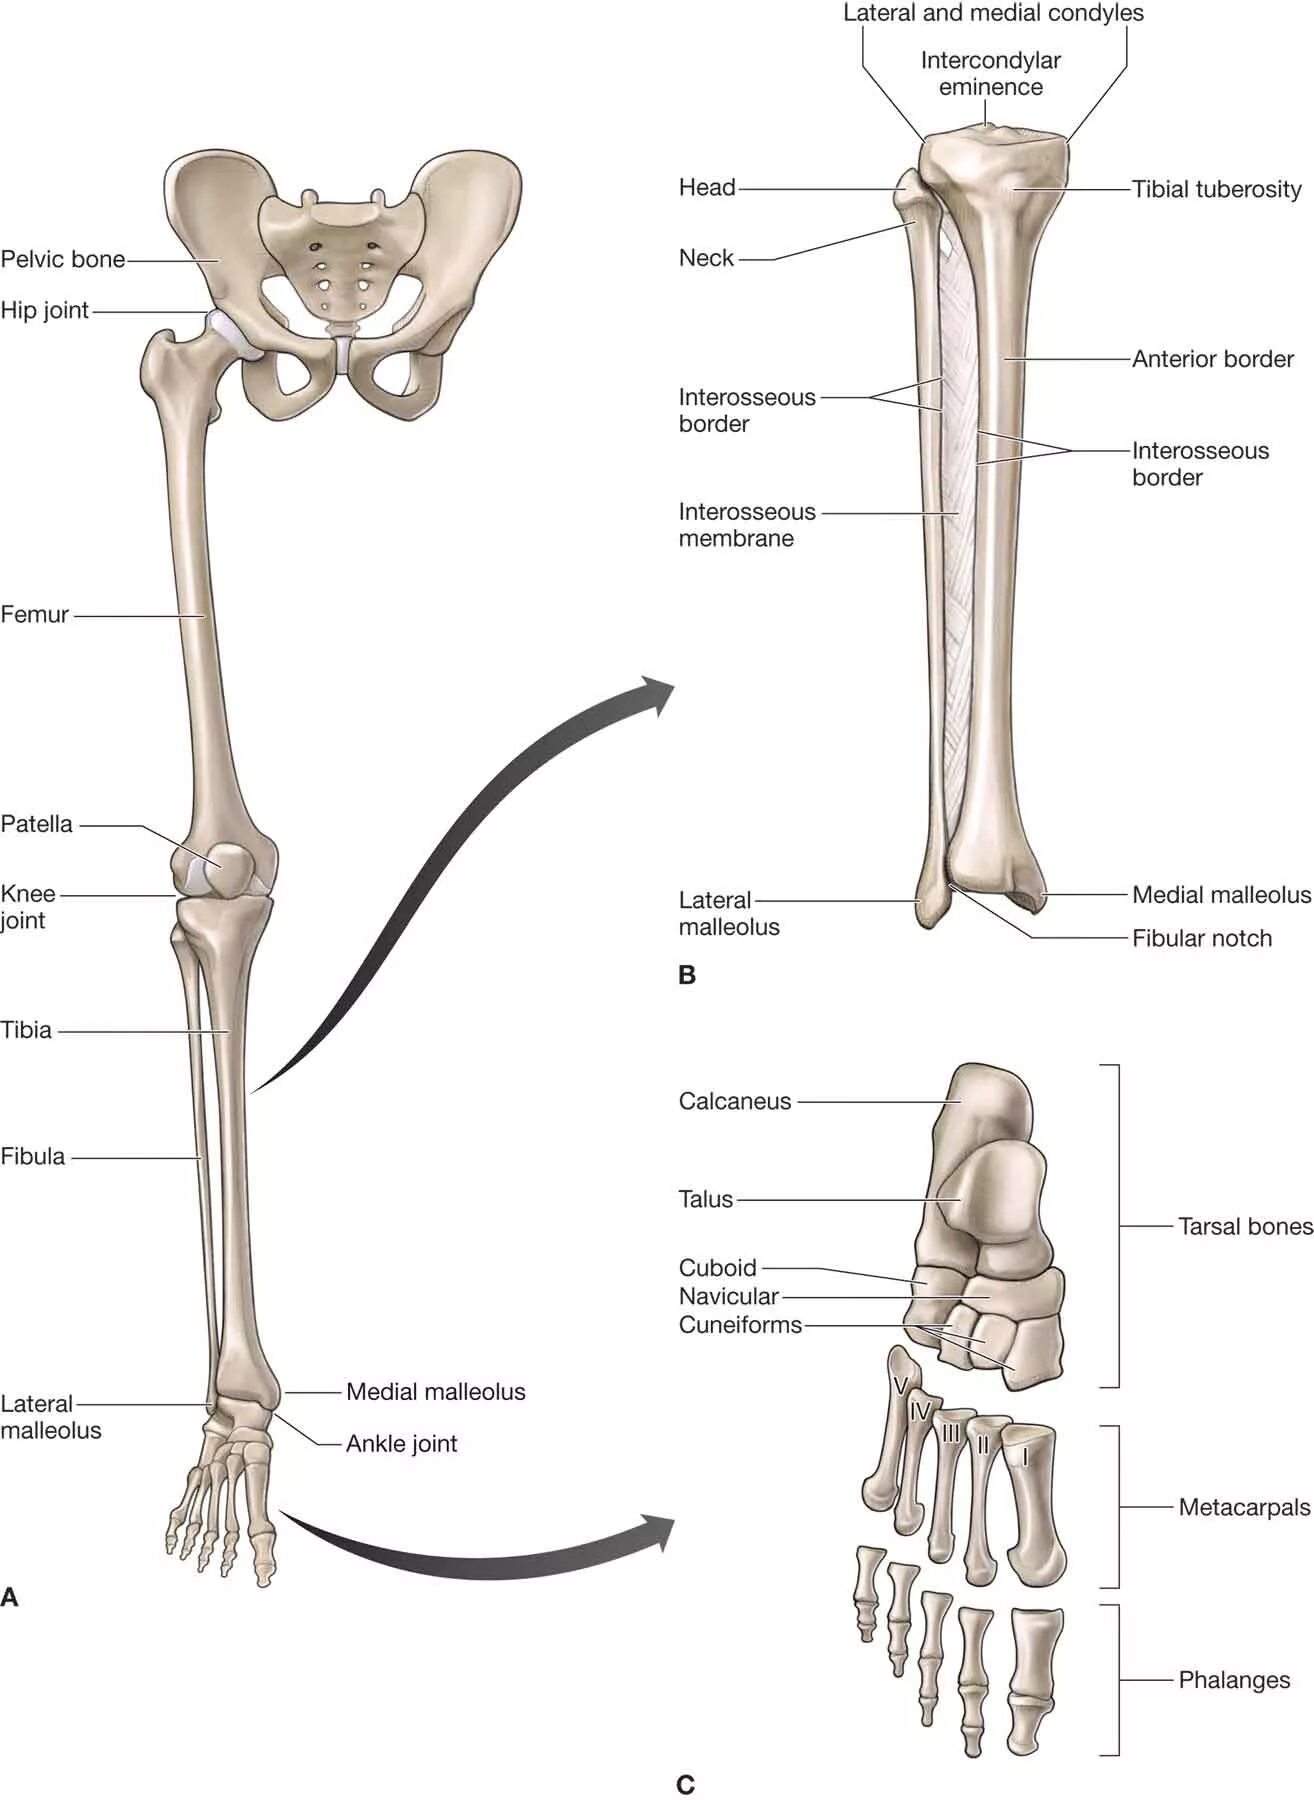 Нижние конечности тела. Кости нижних конечностей человека анатомия. Строение нижних конечностей анатомия. Кости нижних конечностей анатомия строение. Нога анатомия строение кости.